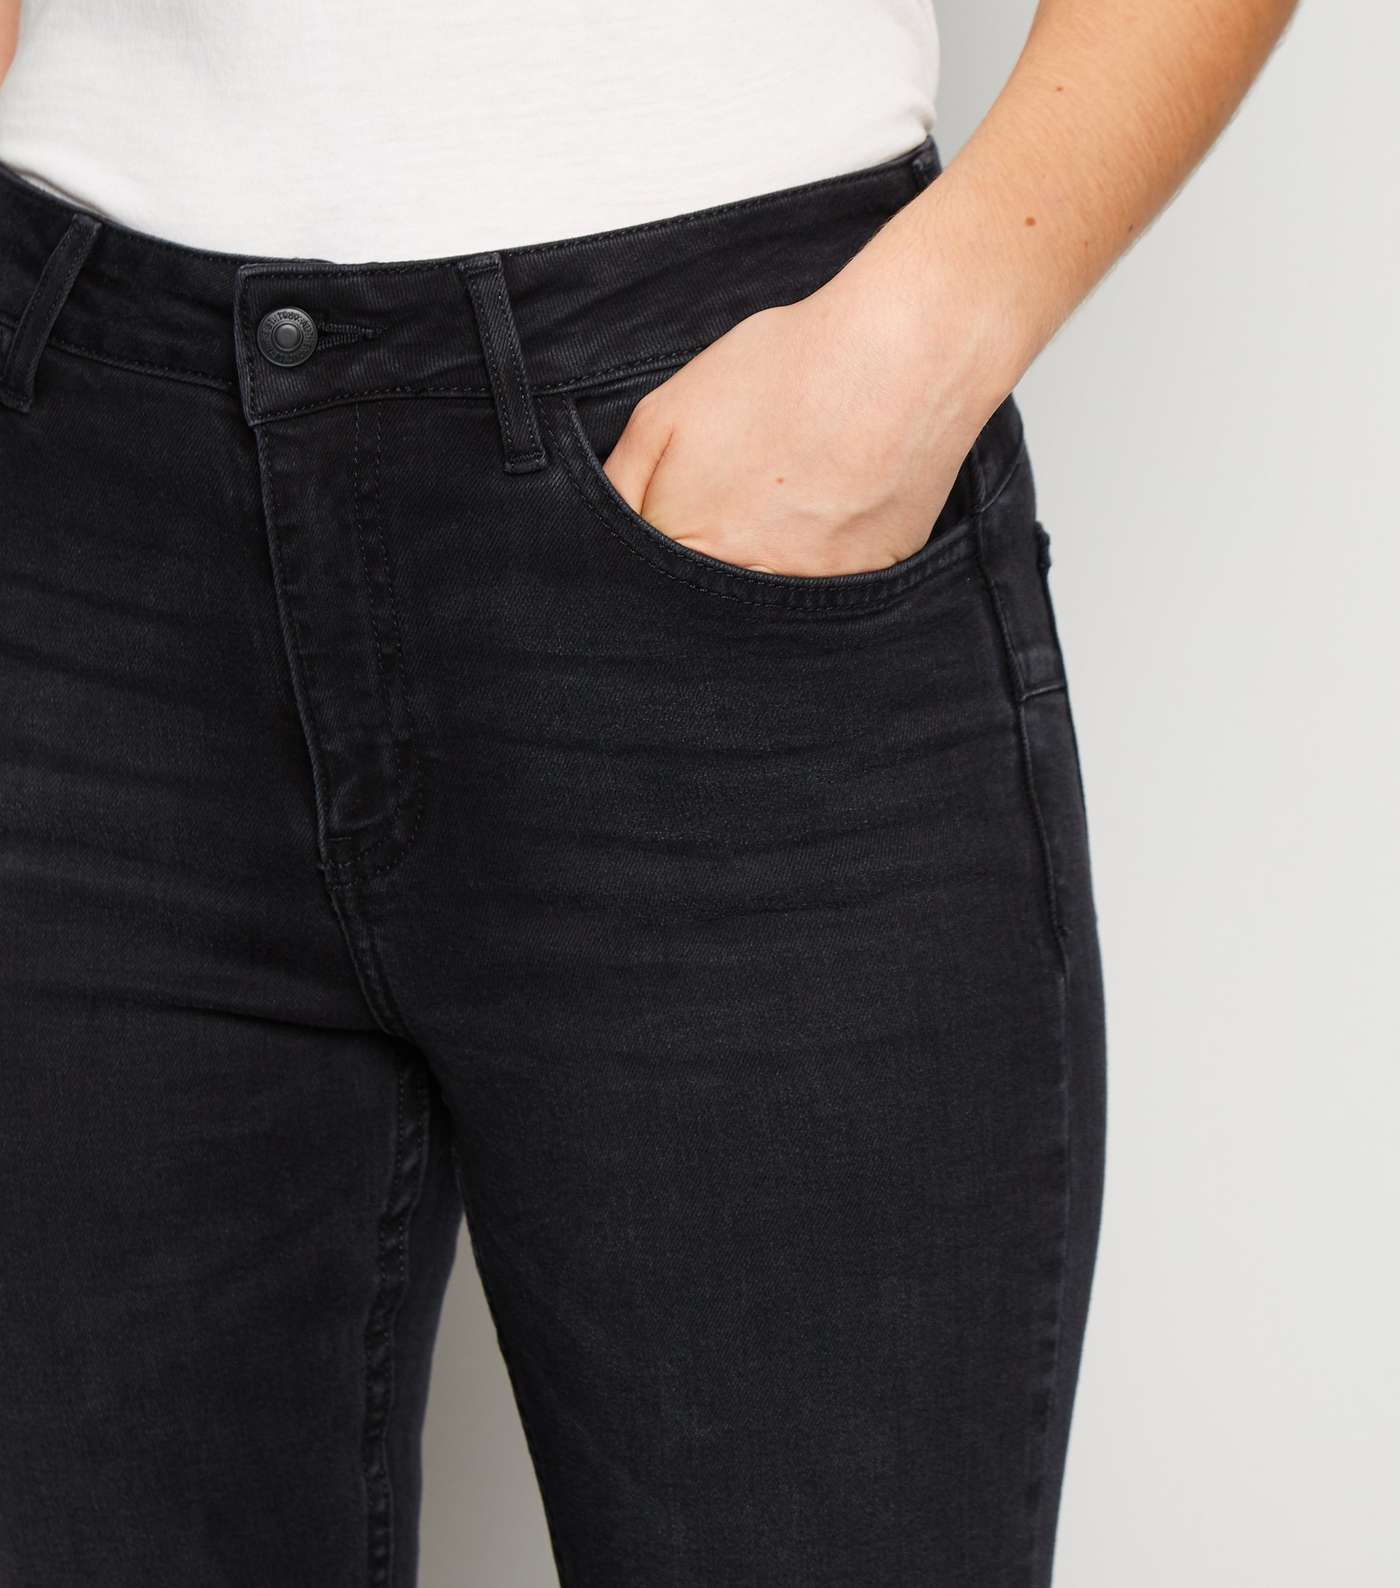 Petite Black 'Lift & Shape' Skinny Jeans Image 6